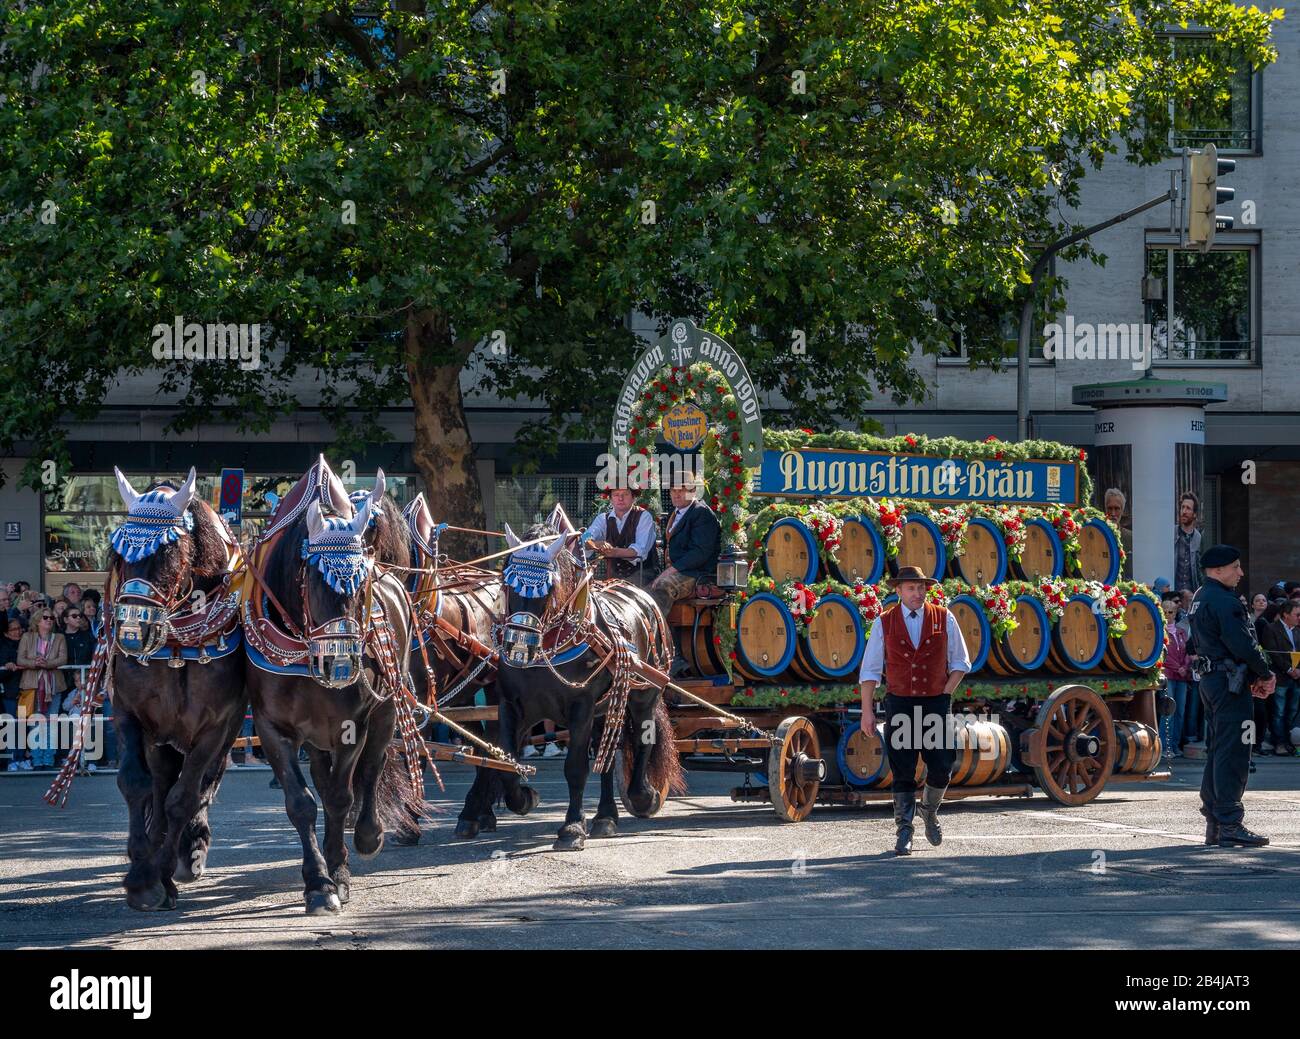 Traditioneller Einzug der Wiesnwirte, Oktoberfest, München, Bayern, Deutschland, Europa Stock Photo